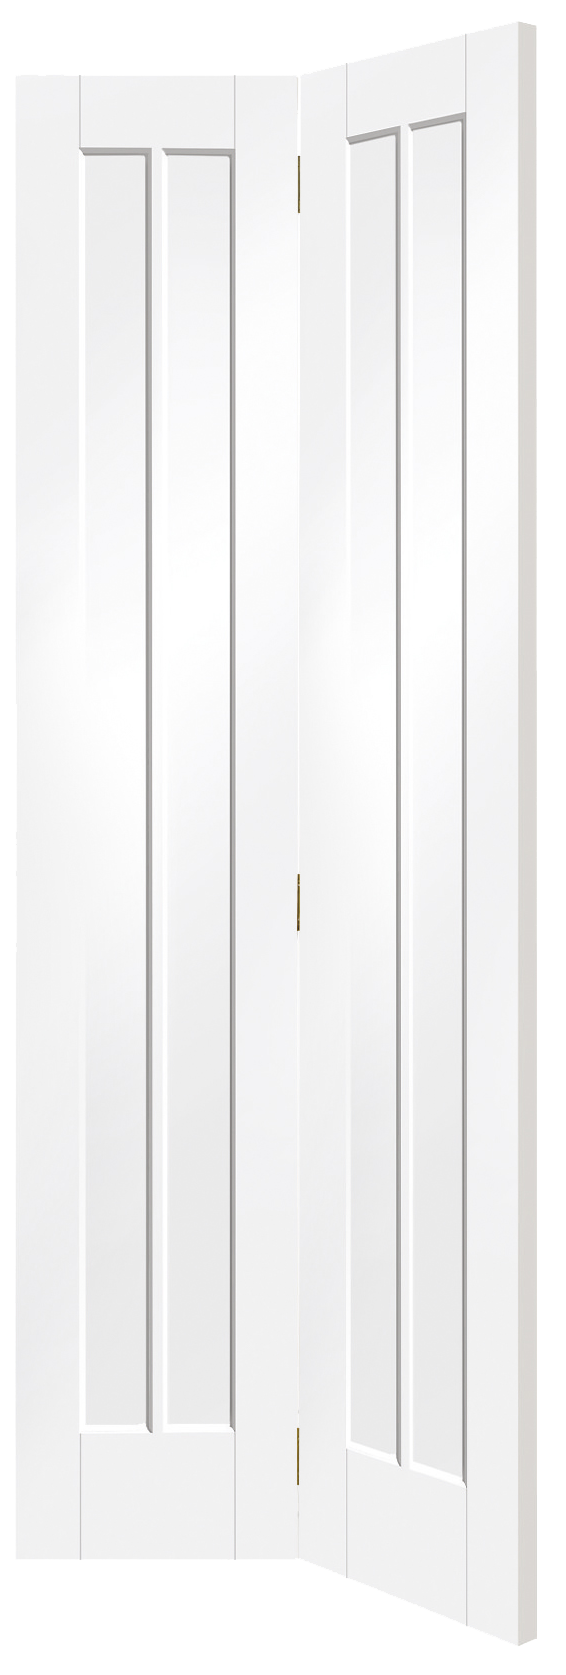 Worcester Internal White Primed Bi-Fold Door – White Primed, 1981 x 762 x 35 mm